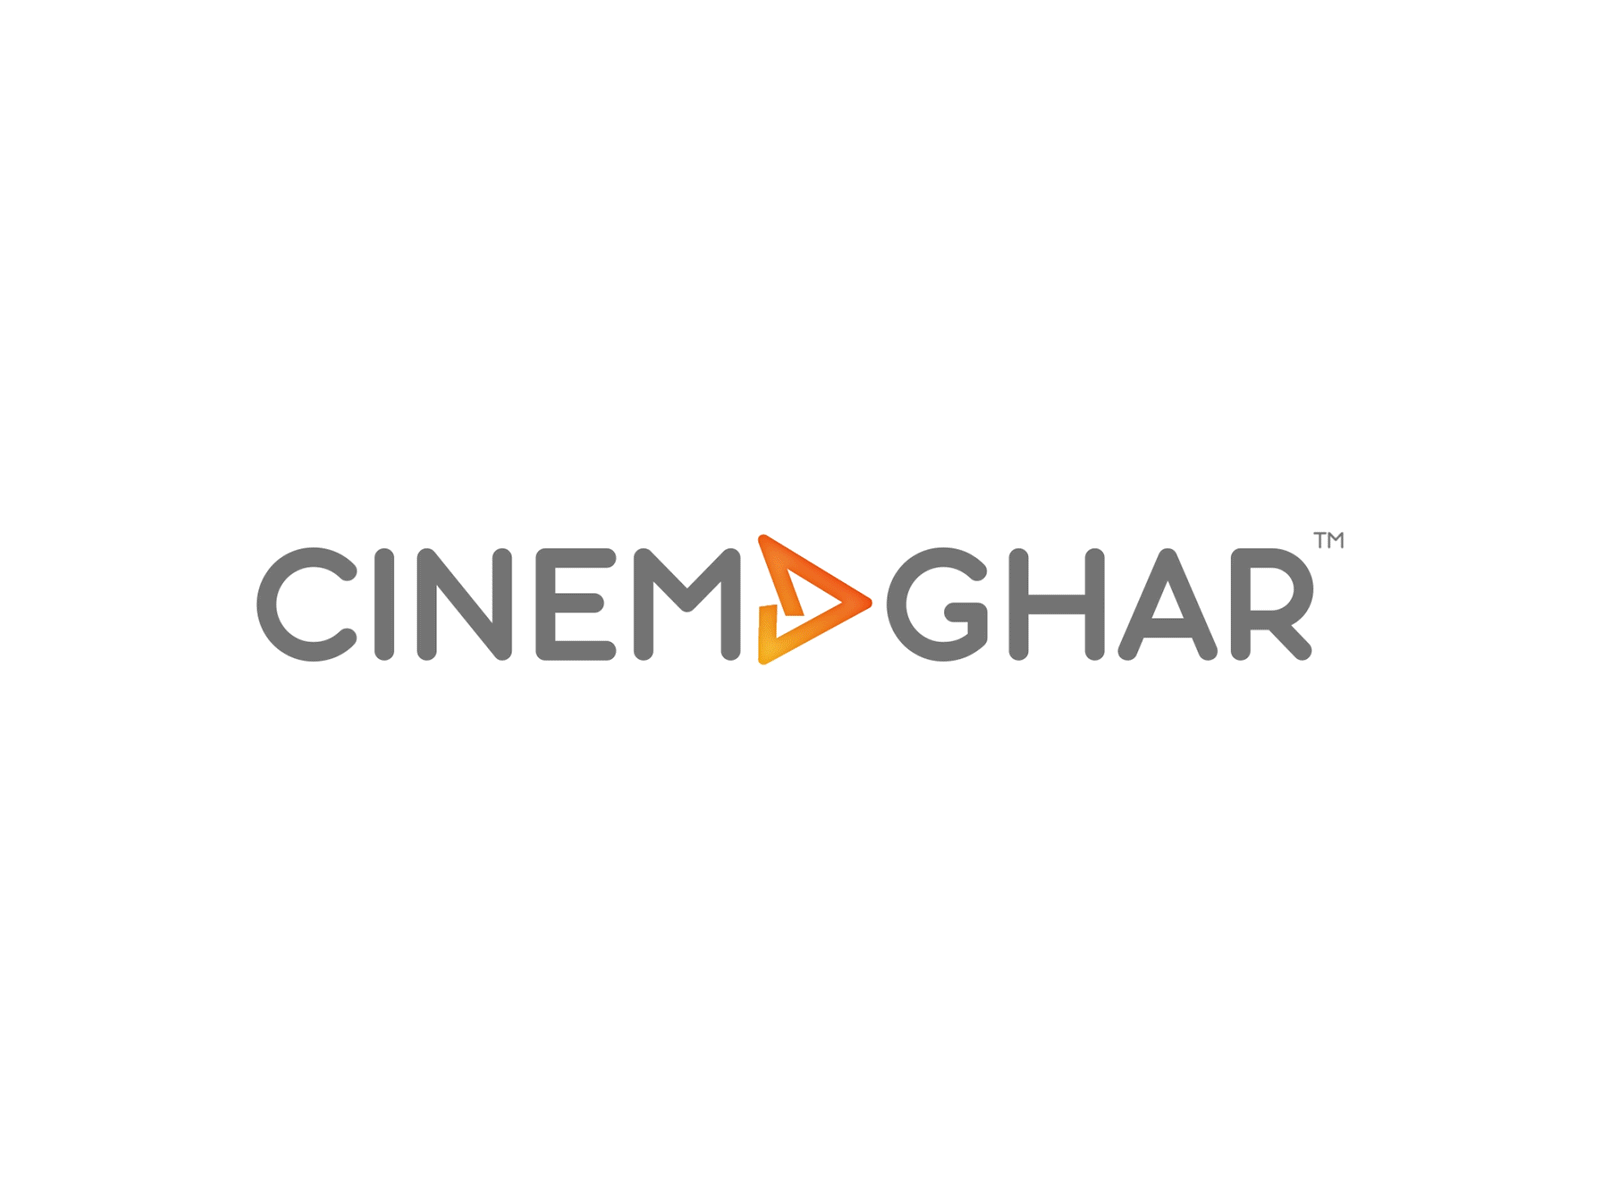 Intro Logo Animation for Cinemaghar App | OTT